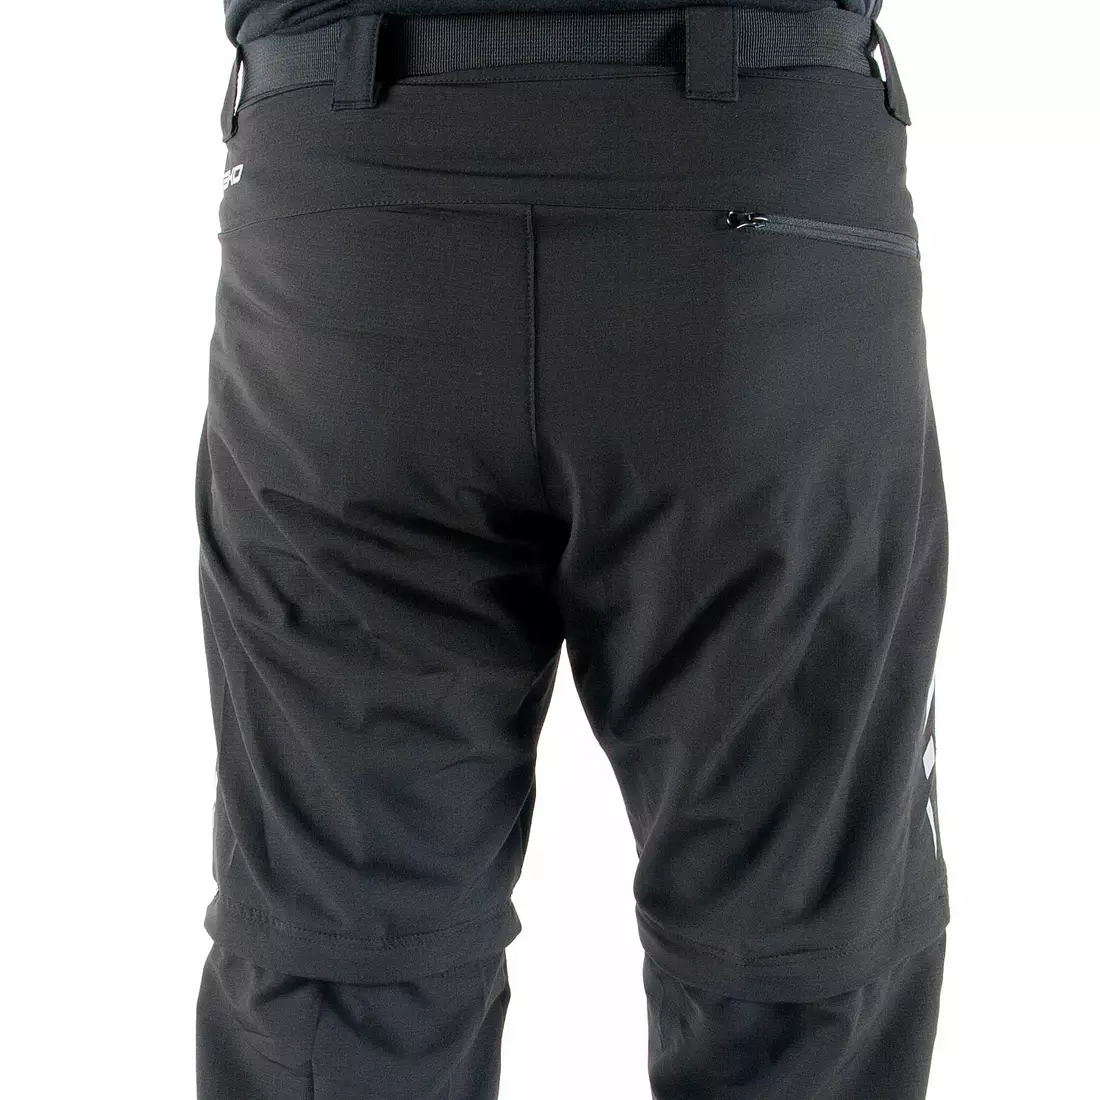 DEKO STR-M-001 pantaloni de ciclism bărbați cu picioare detașabile, negru